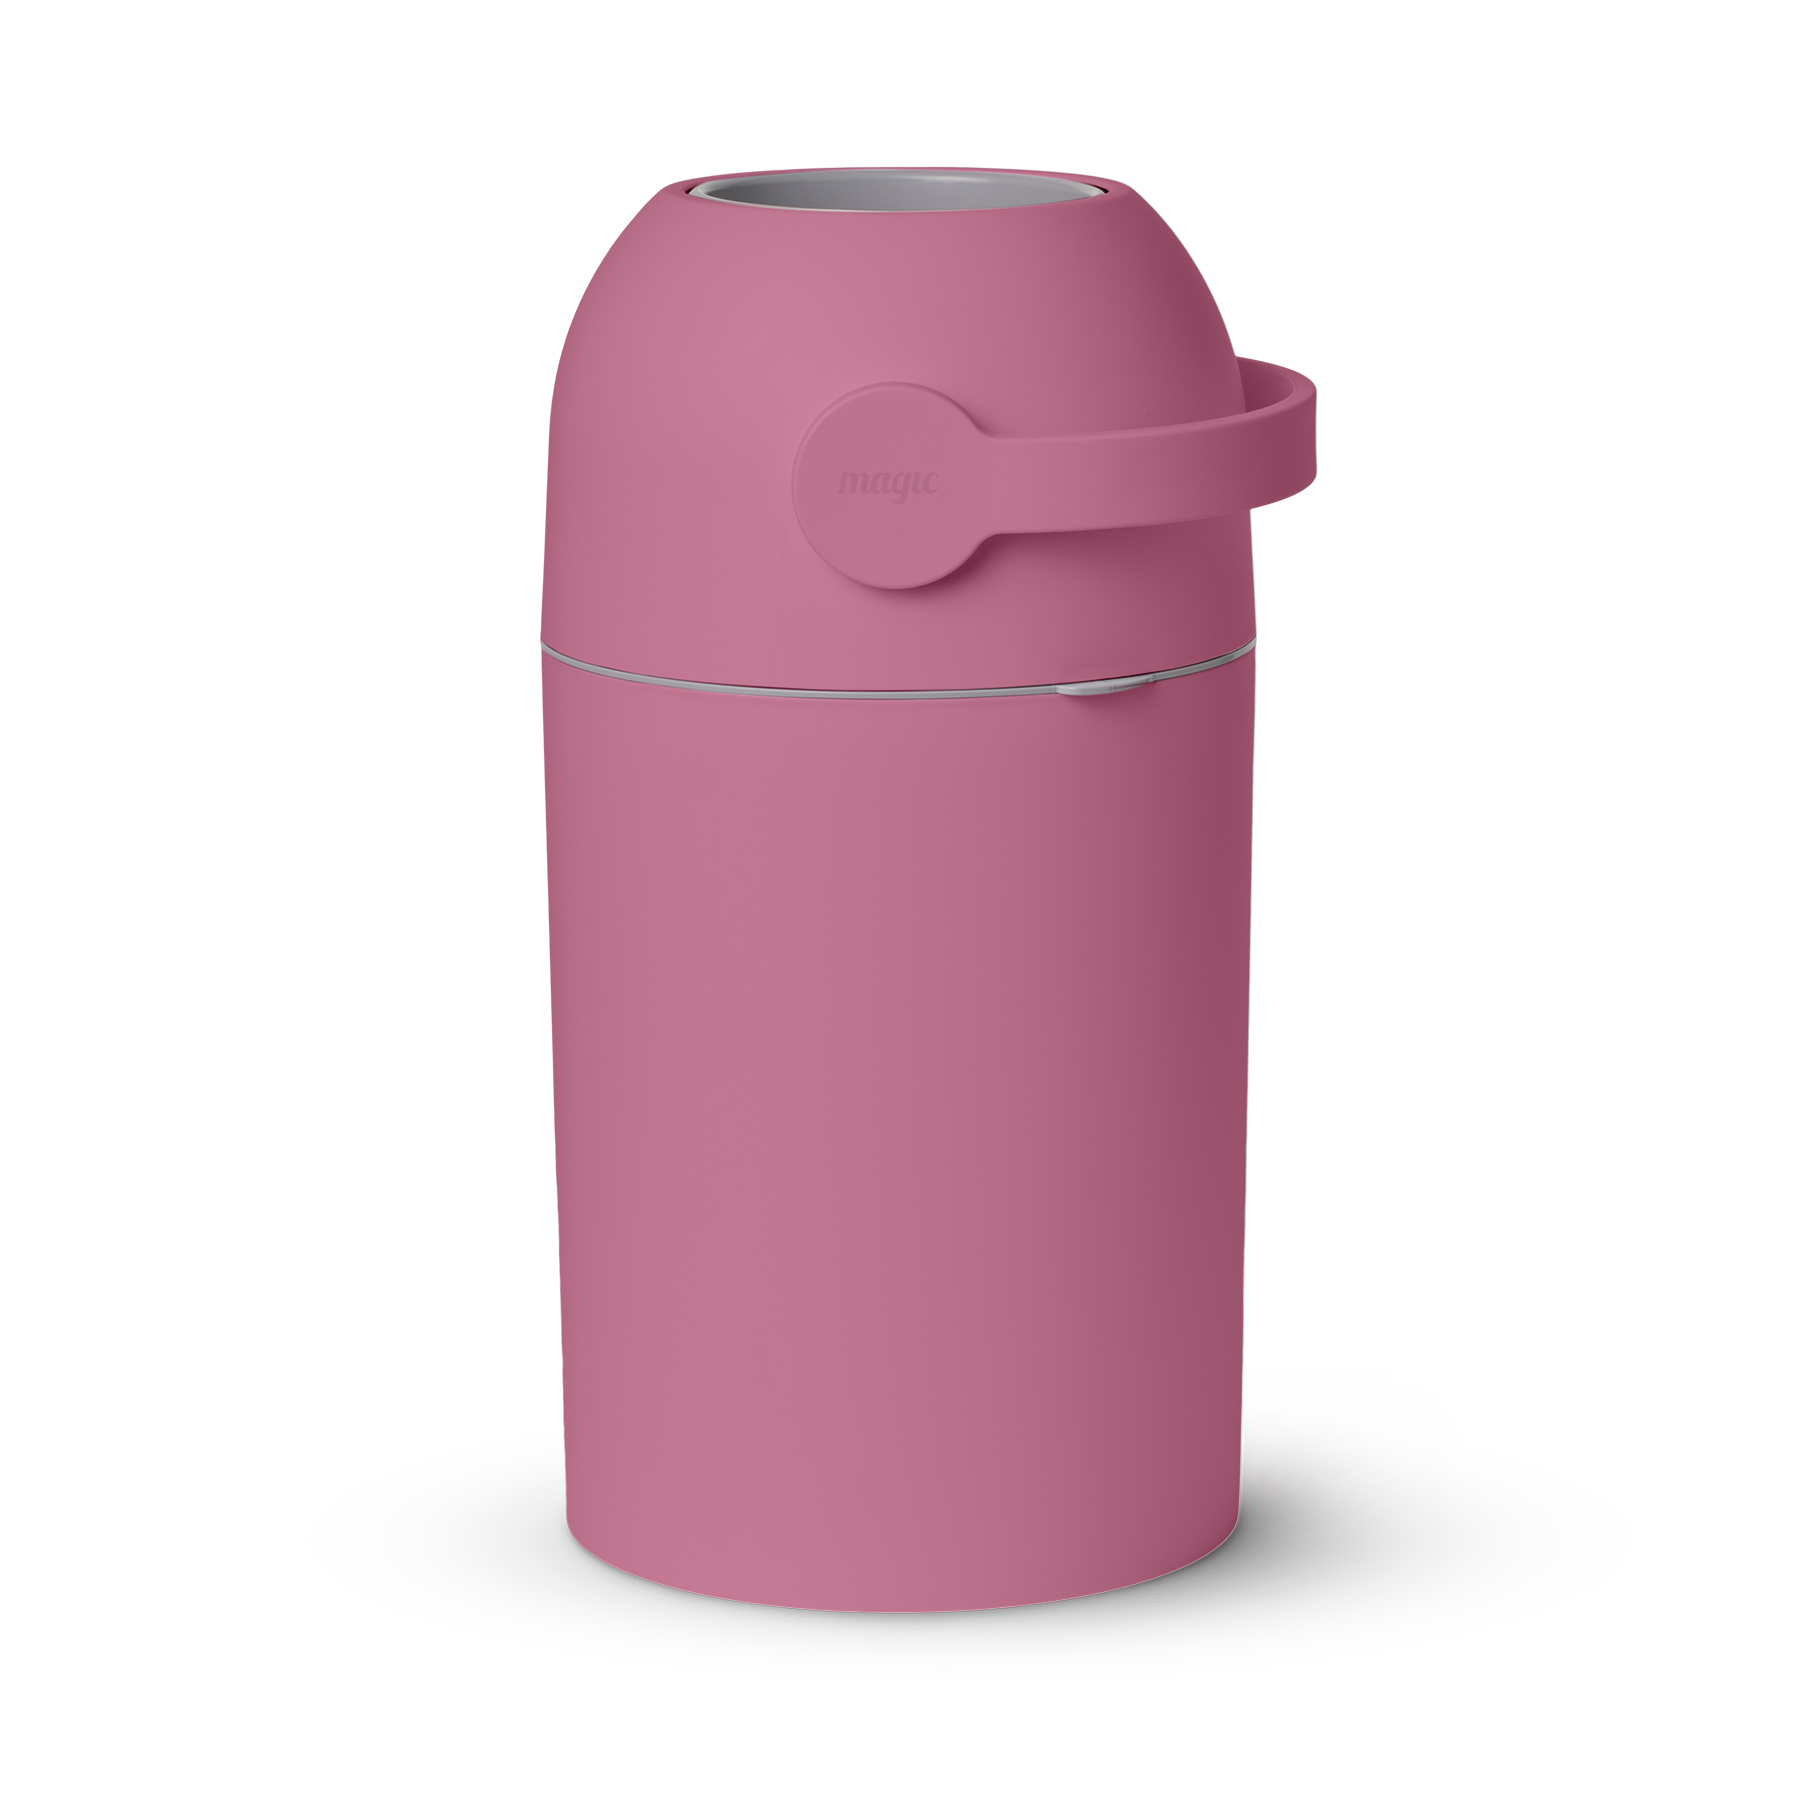 Накопитель подгузников Magic Diaper pail Majestic, Candy Pink накопитель подгузников magic diaper pail majestic clay